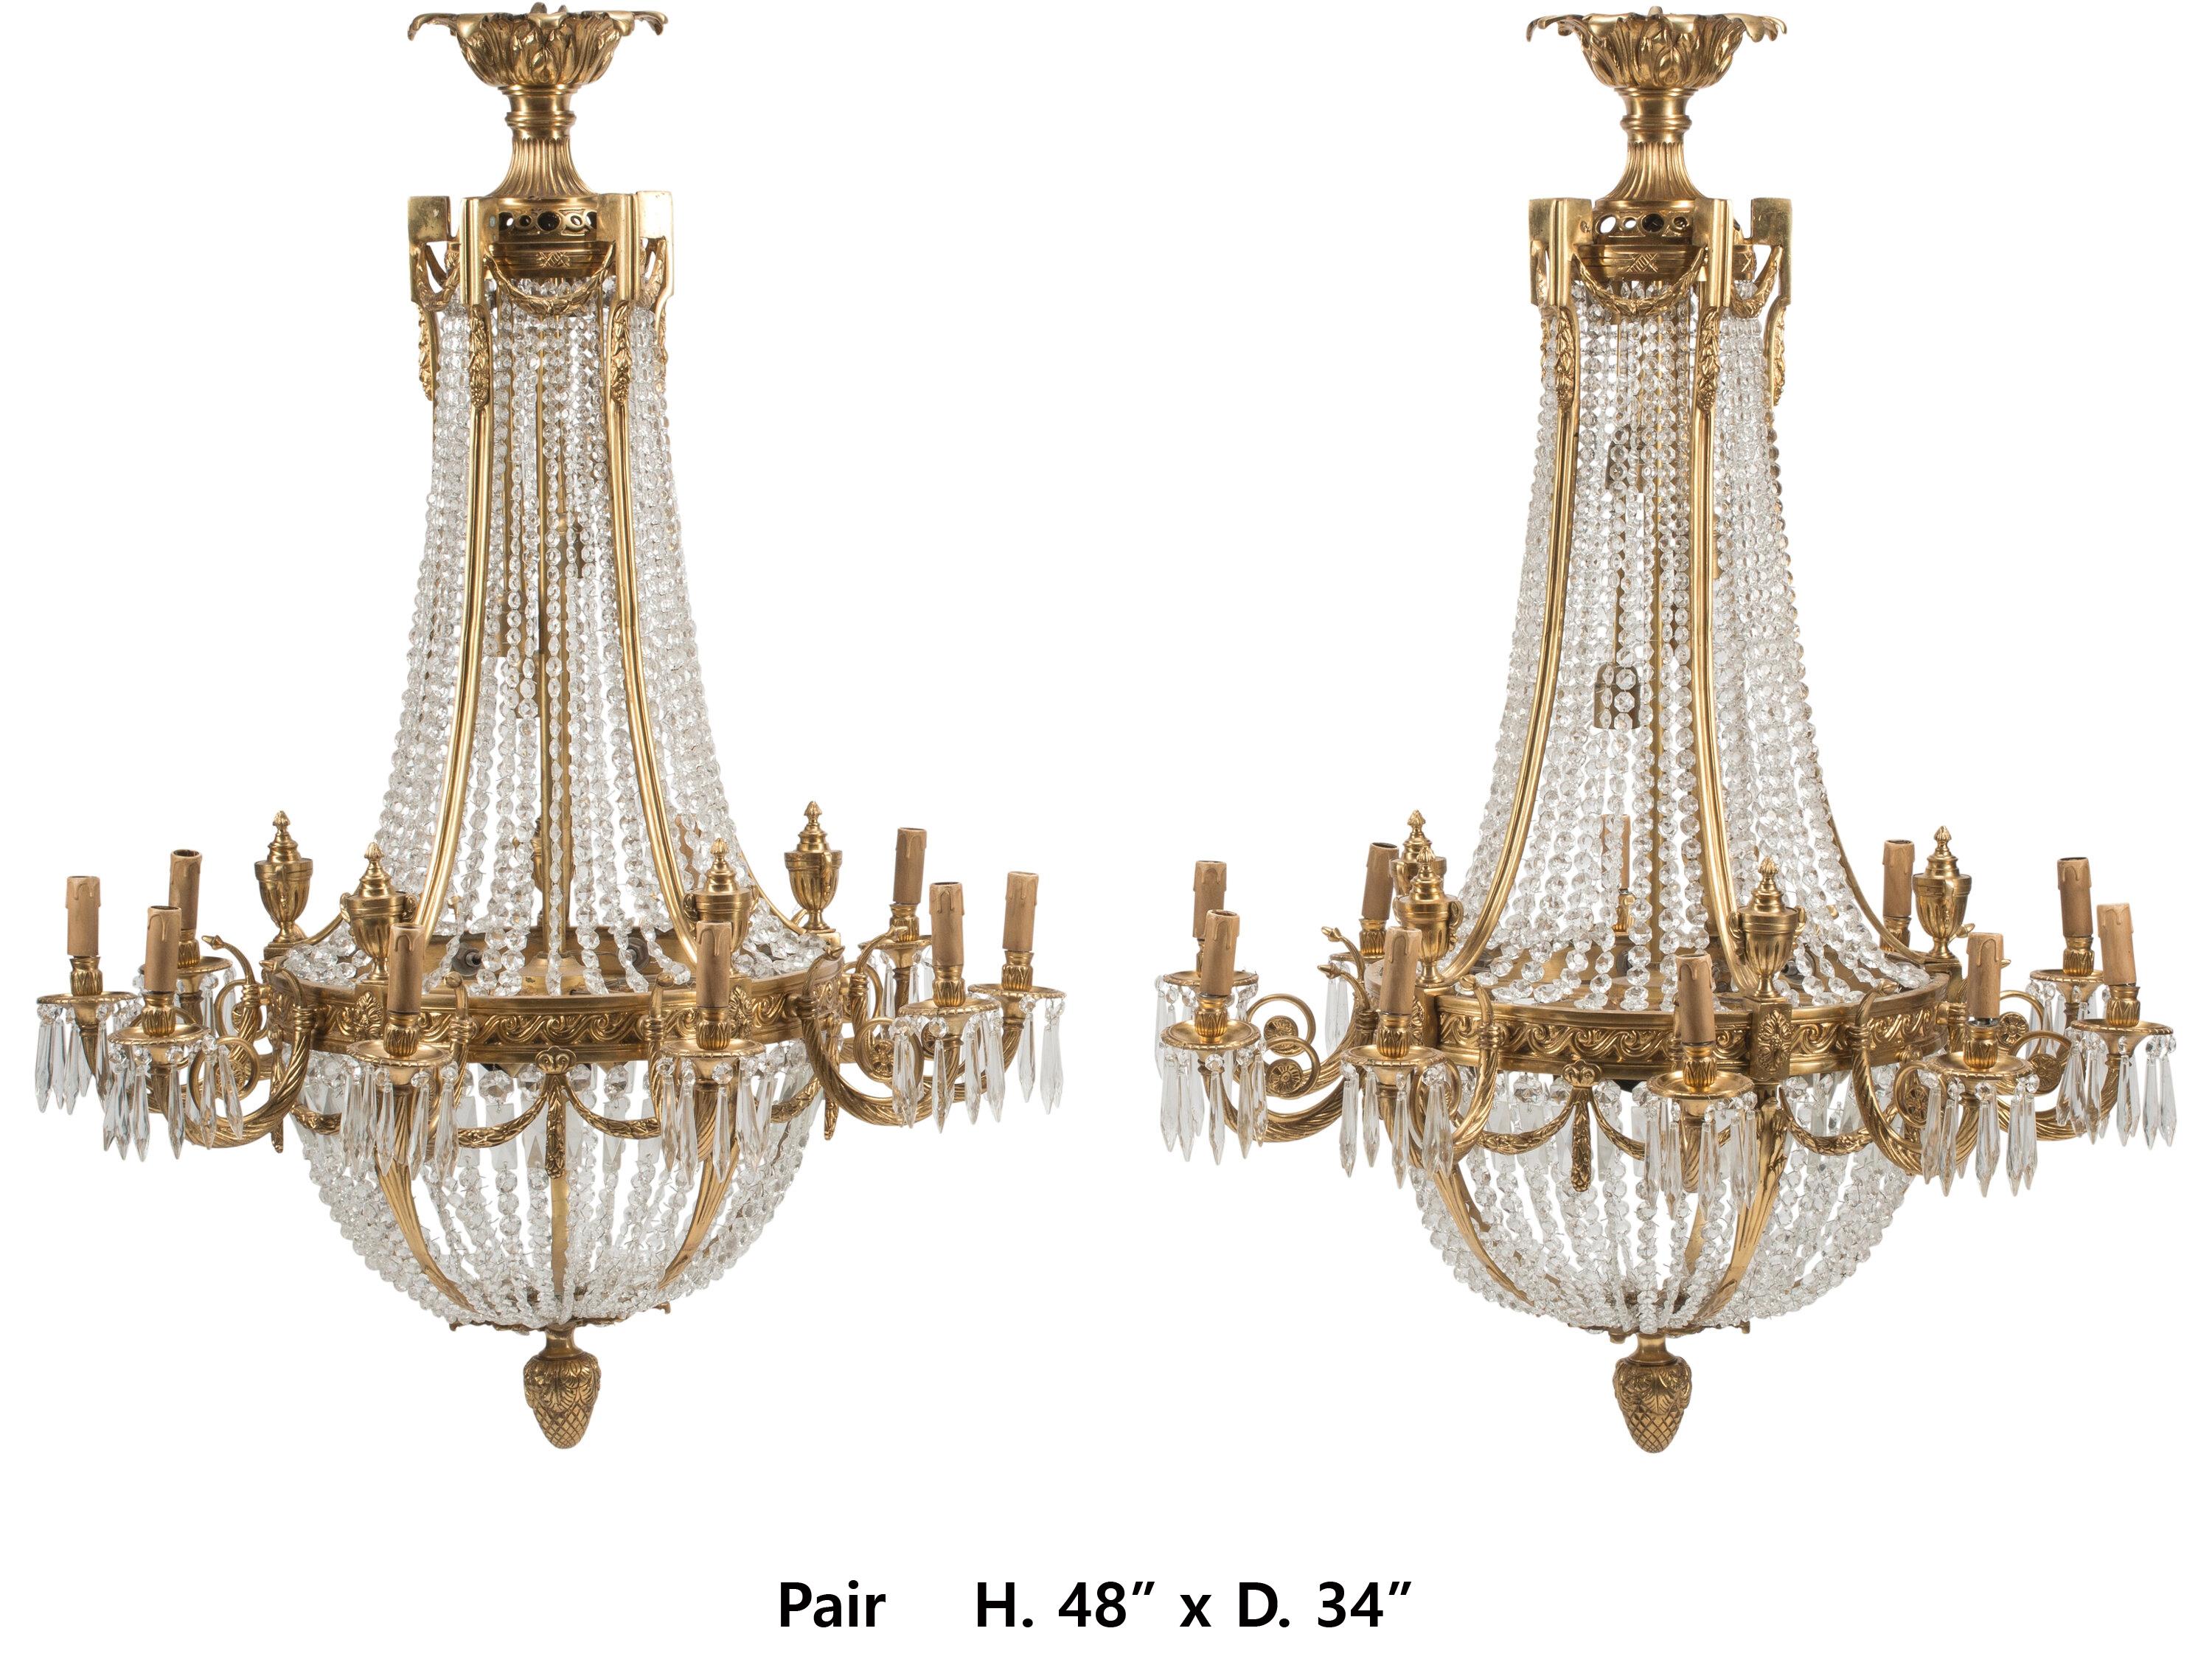 Beeindruckendes Paar französischer Kronleuchter im neoklassischen Stil aus vergoldeter Bronze und Kristall mit zehn Lichtern.
48 x 34 Zoll
